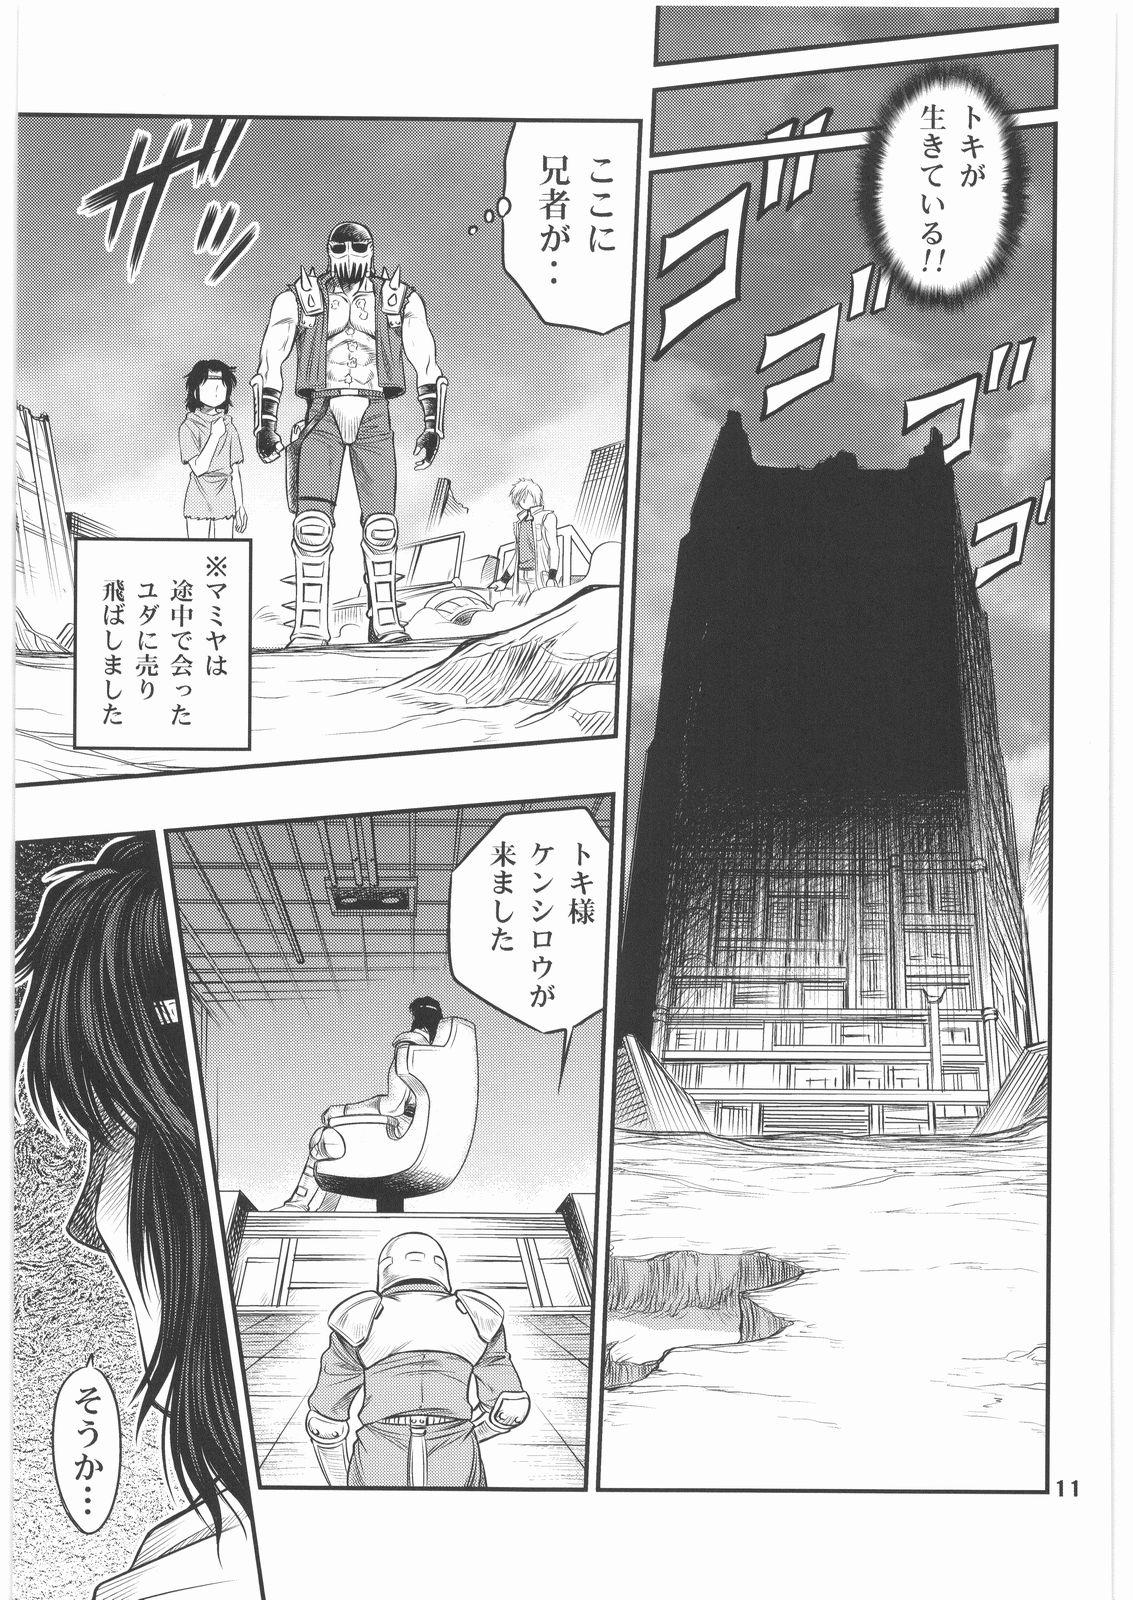 Amatuer Seikimatsu Tetsu Kamen Densetsu 2 - Fist of the north star Raw - Page 10